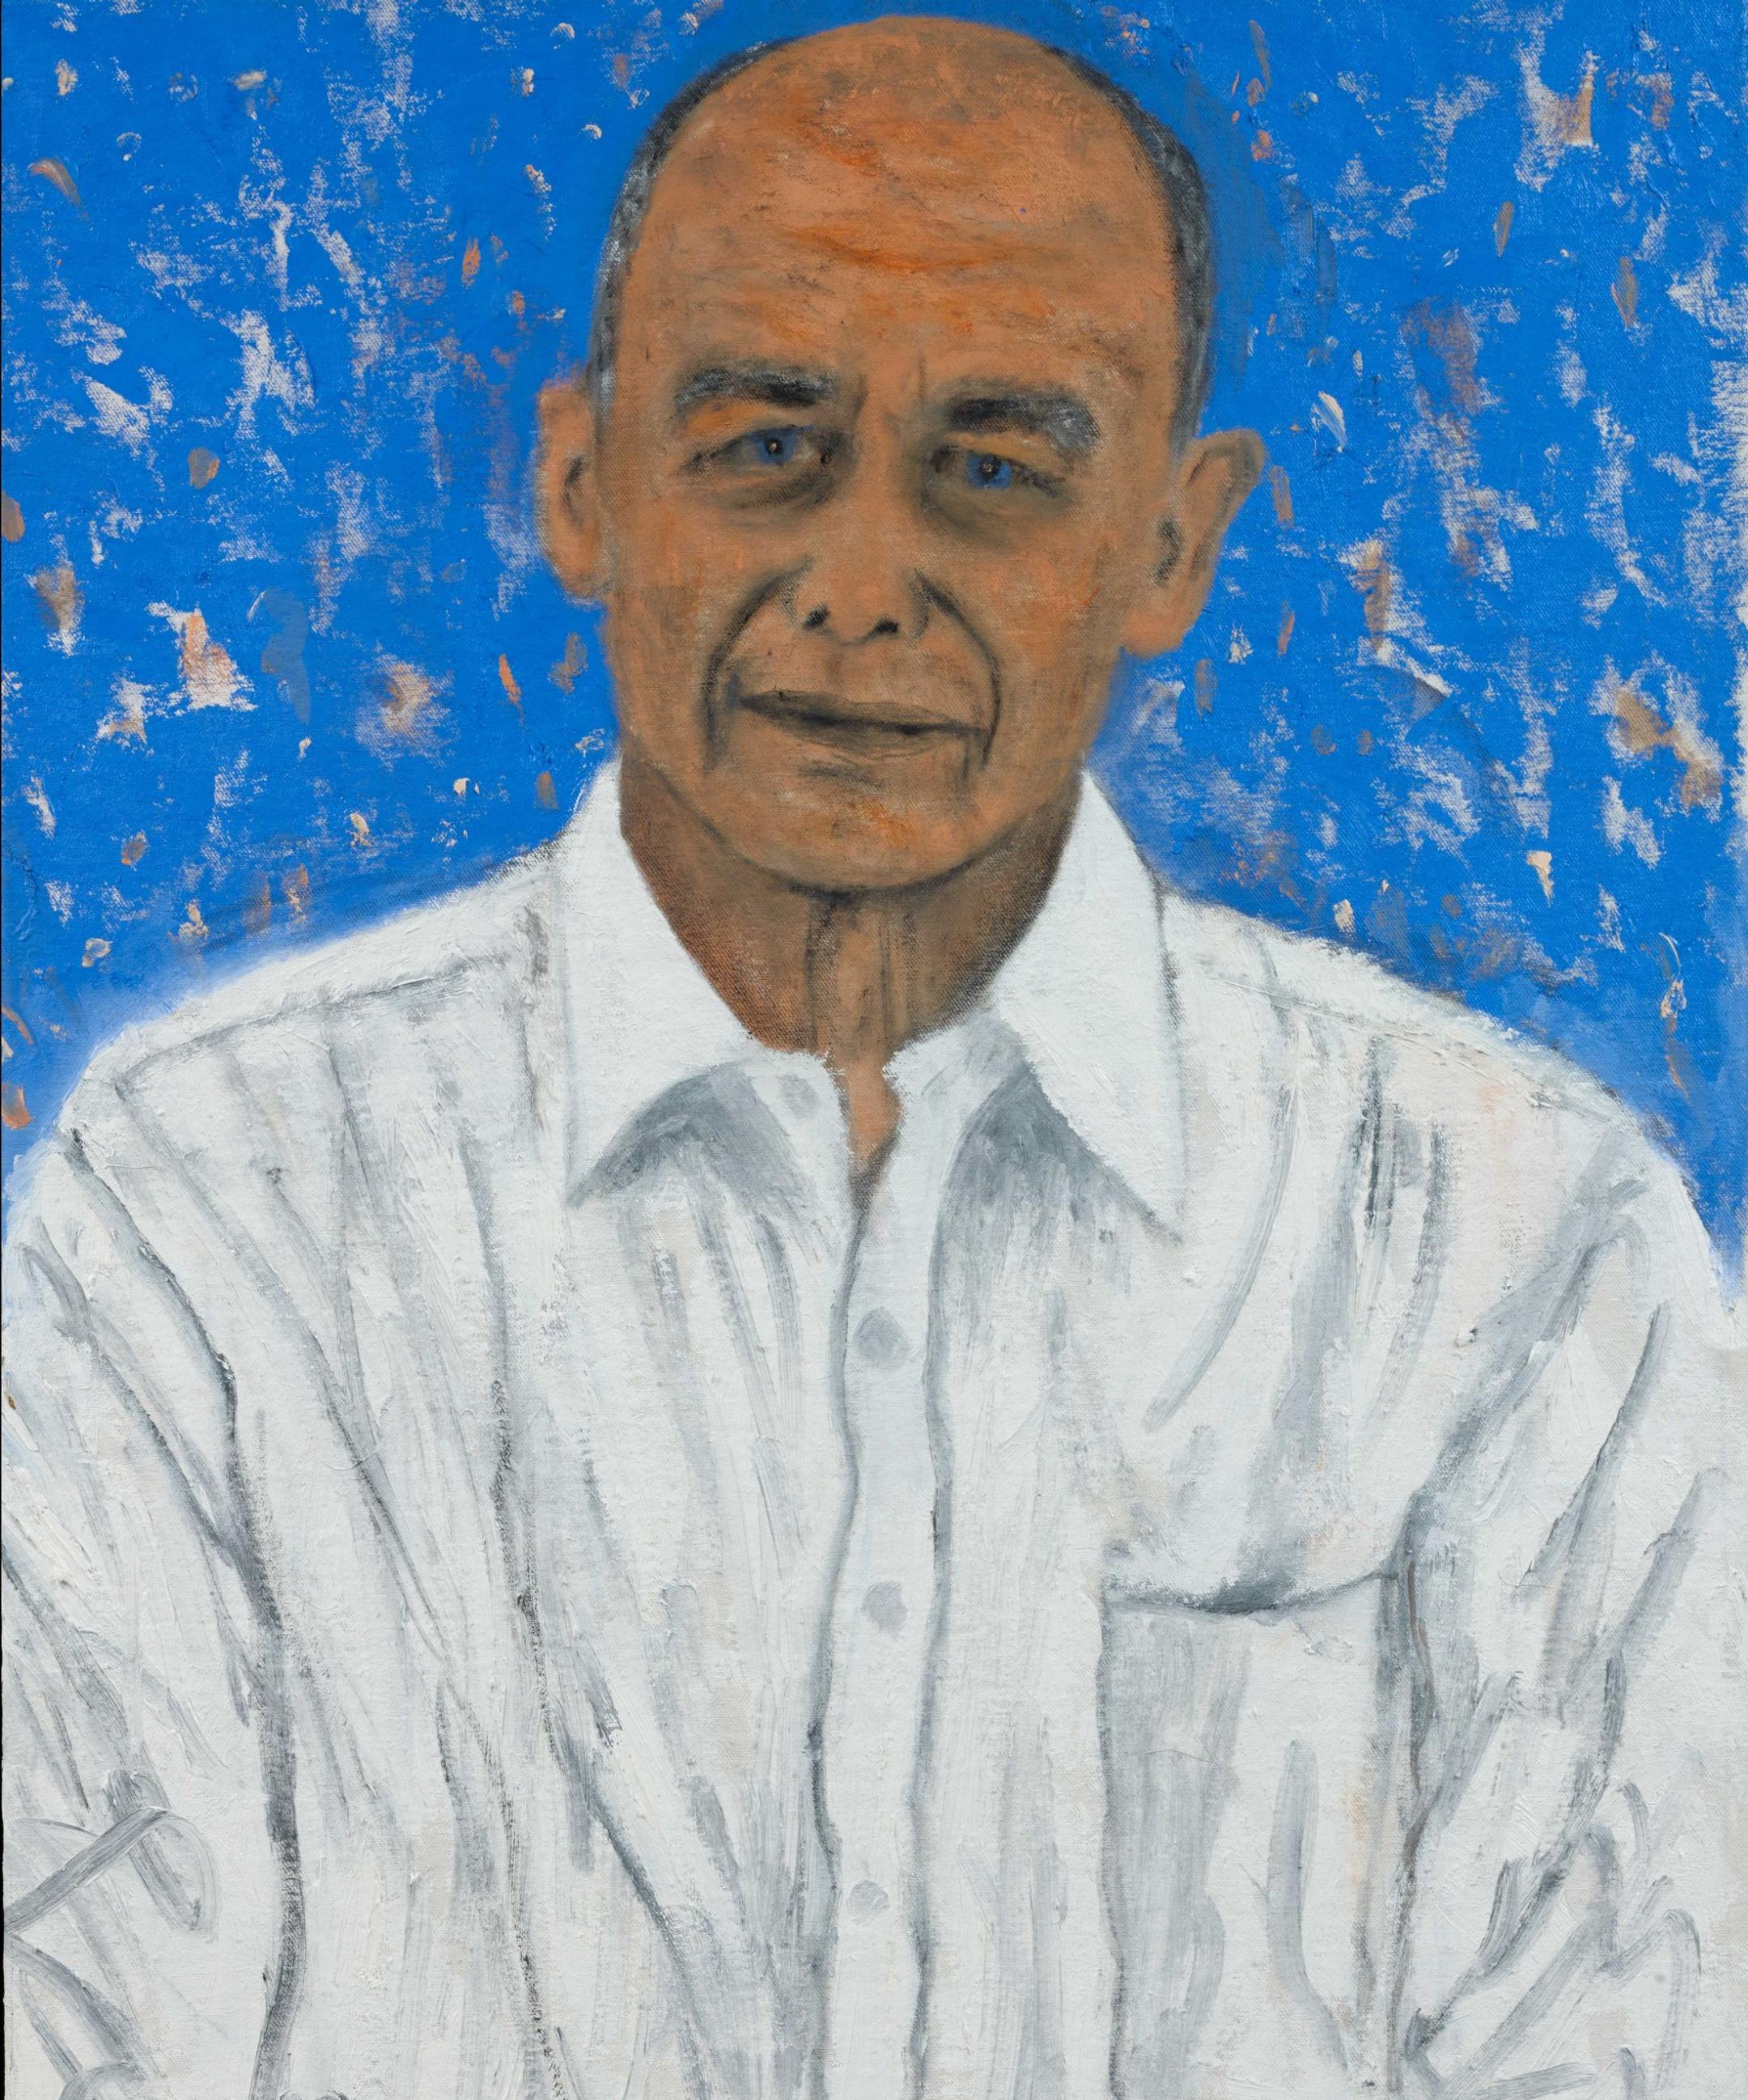 Porträt von Ueli Maurer